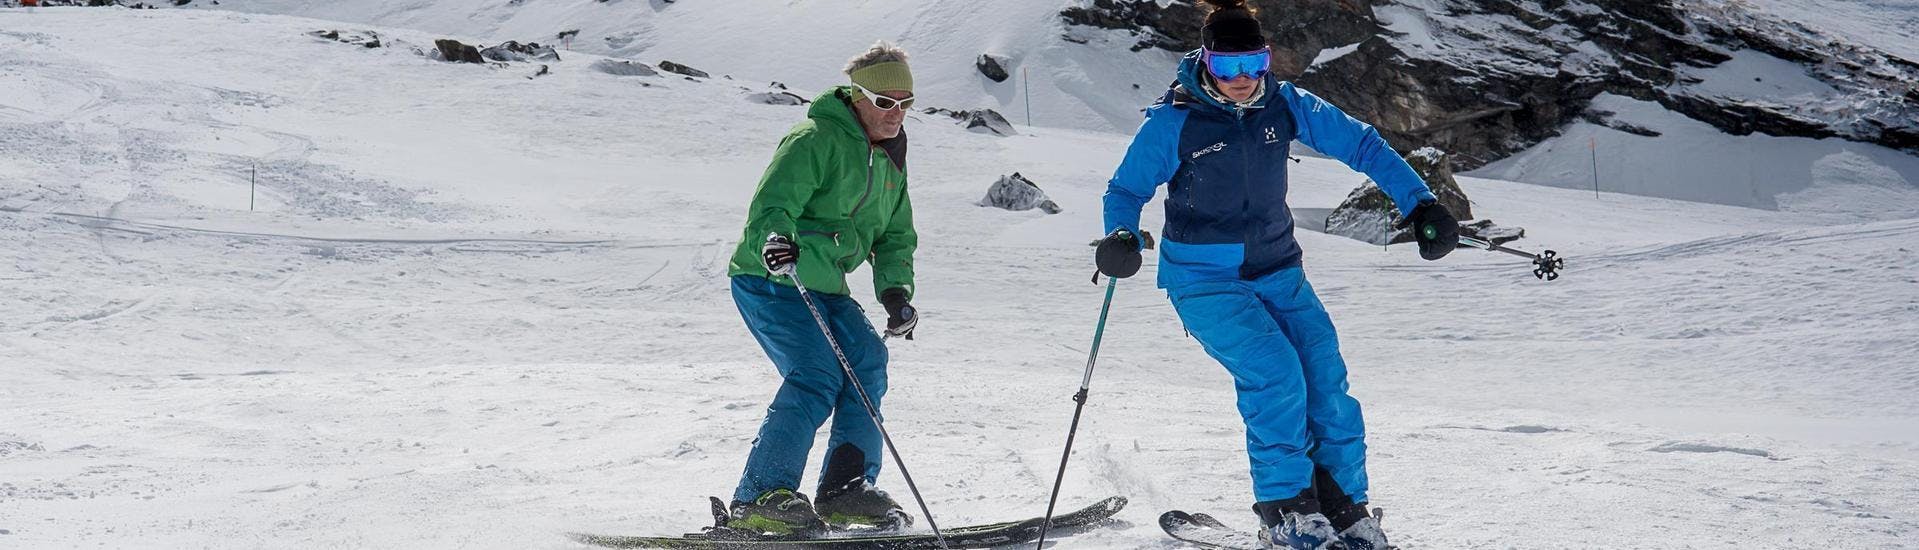 Skilessen voor volwassenen (vanaf 13 jaar) van alle niveaus.